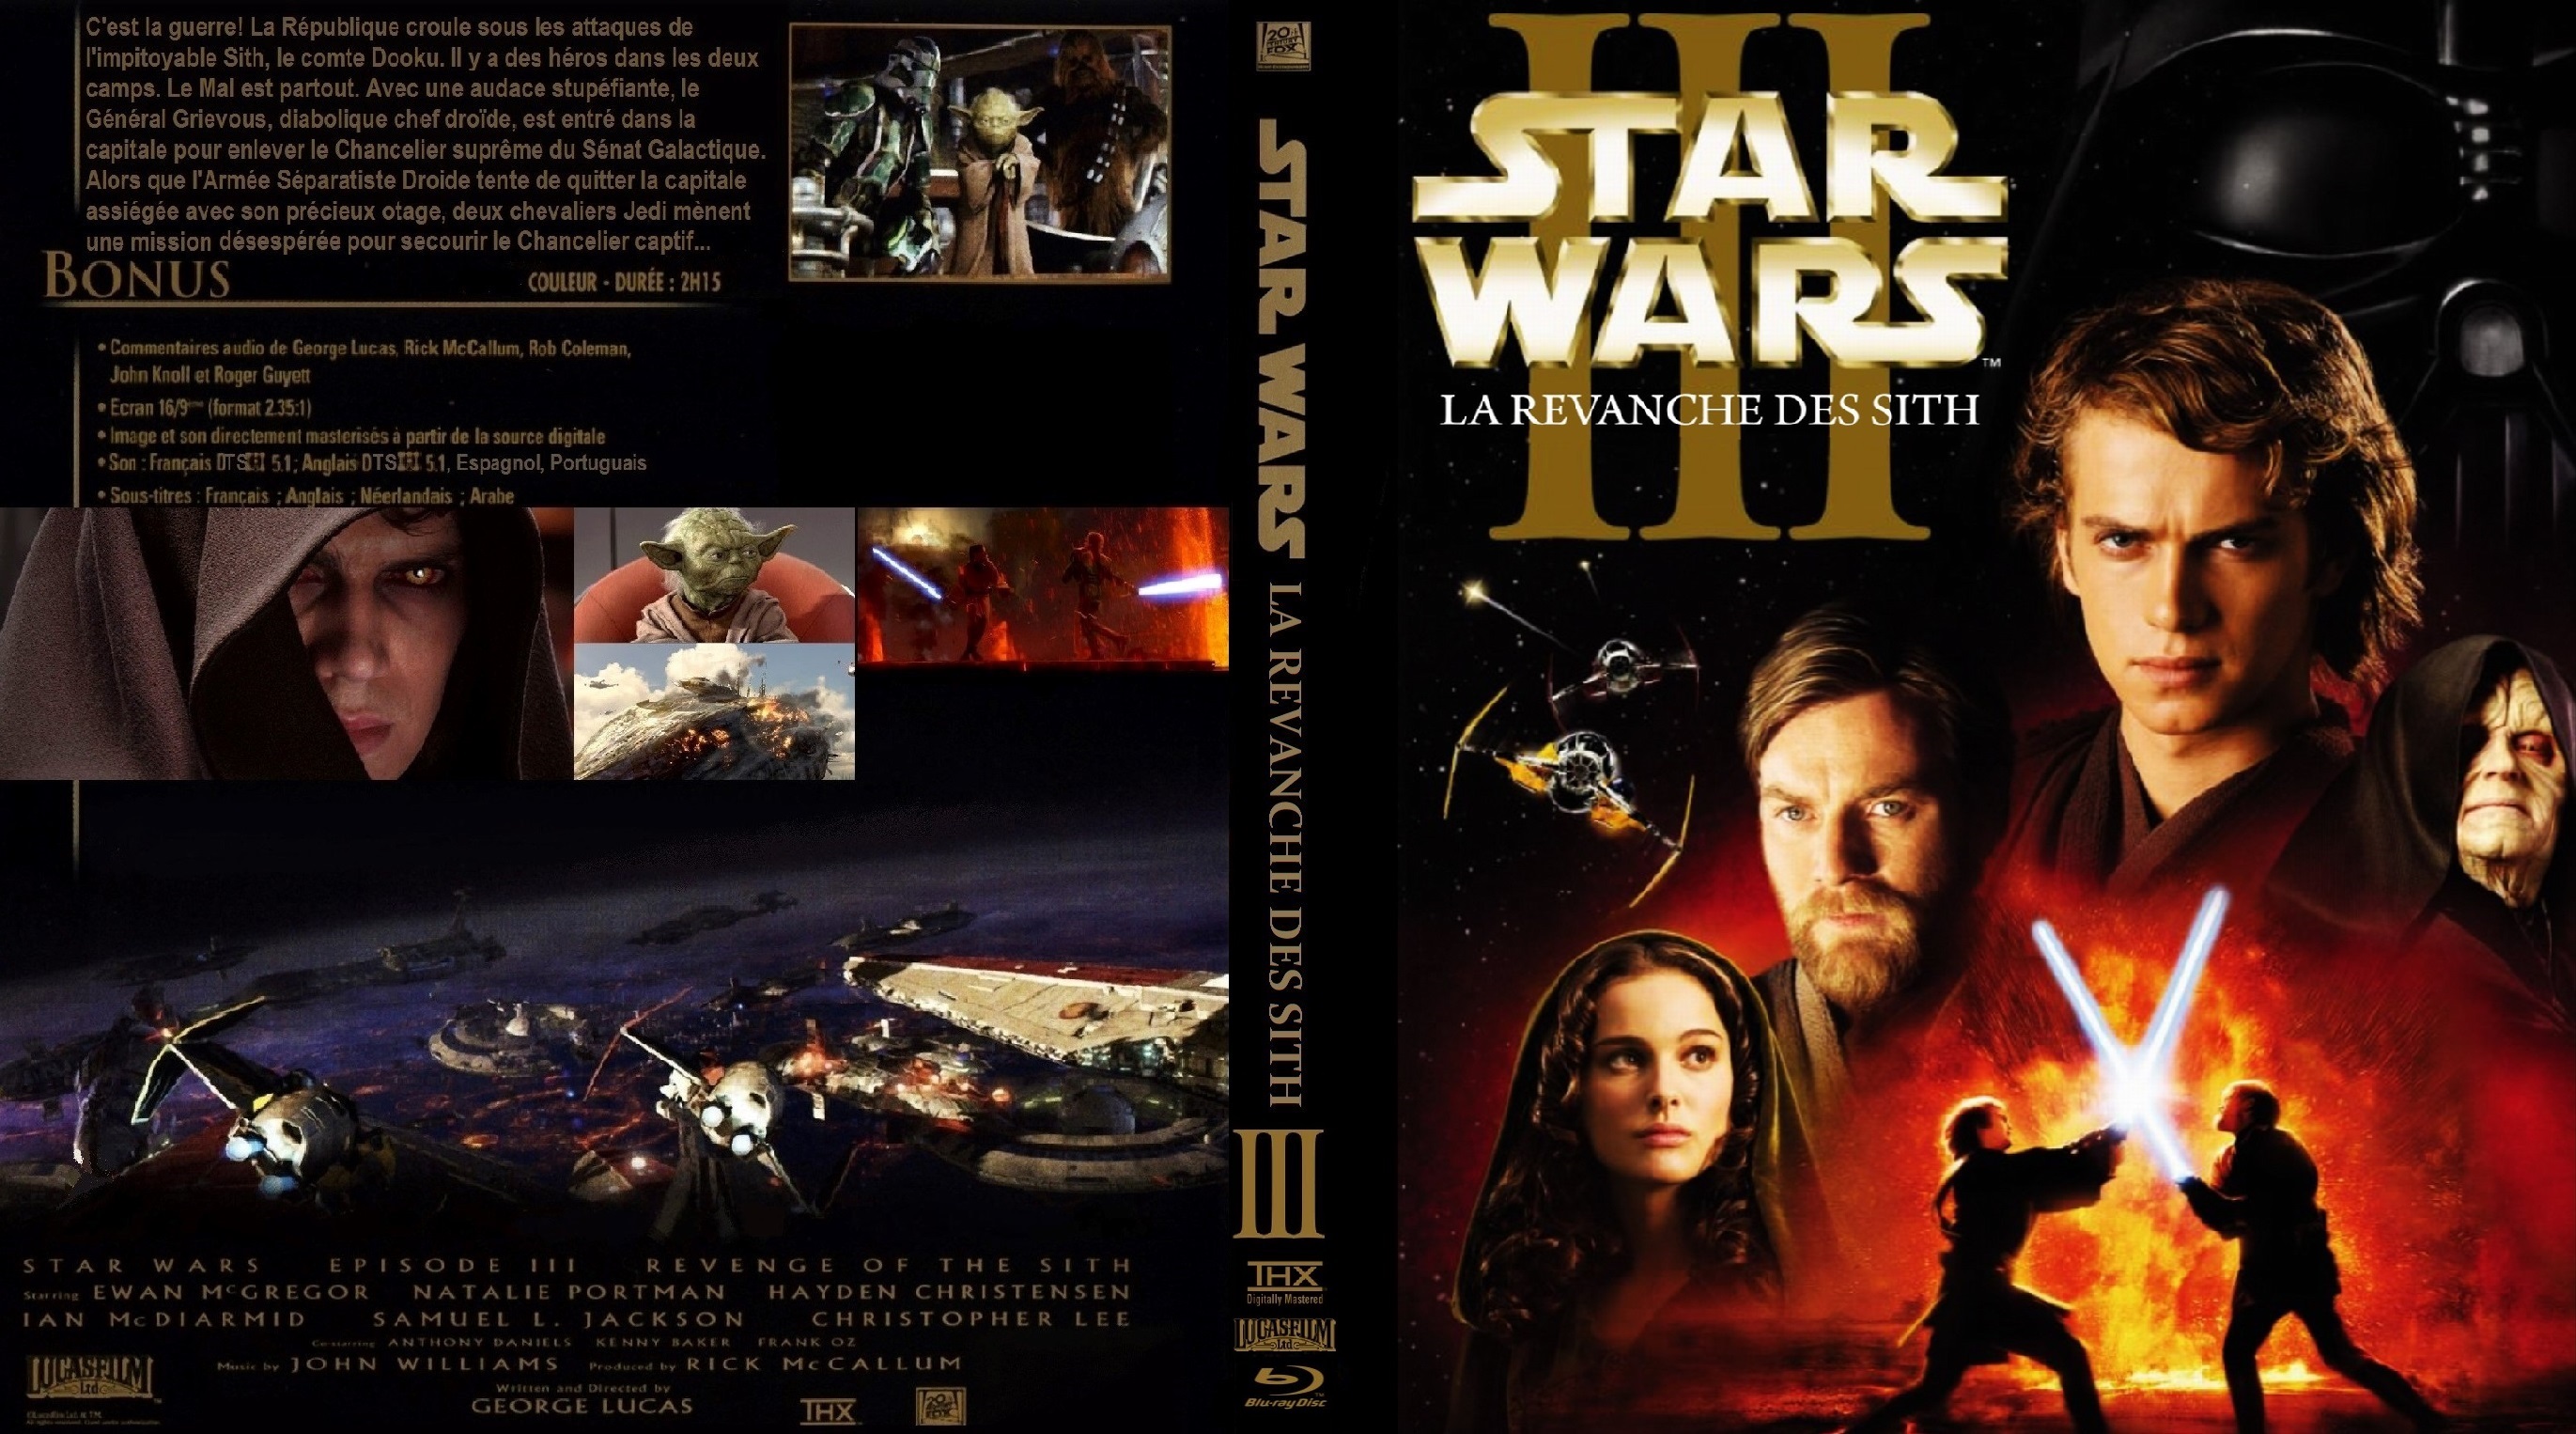 Jaquette DVD Star wars La revanche des Sith custom (BLU-RAY)